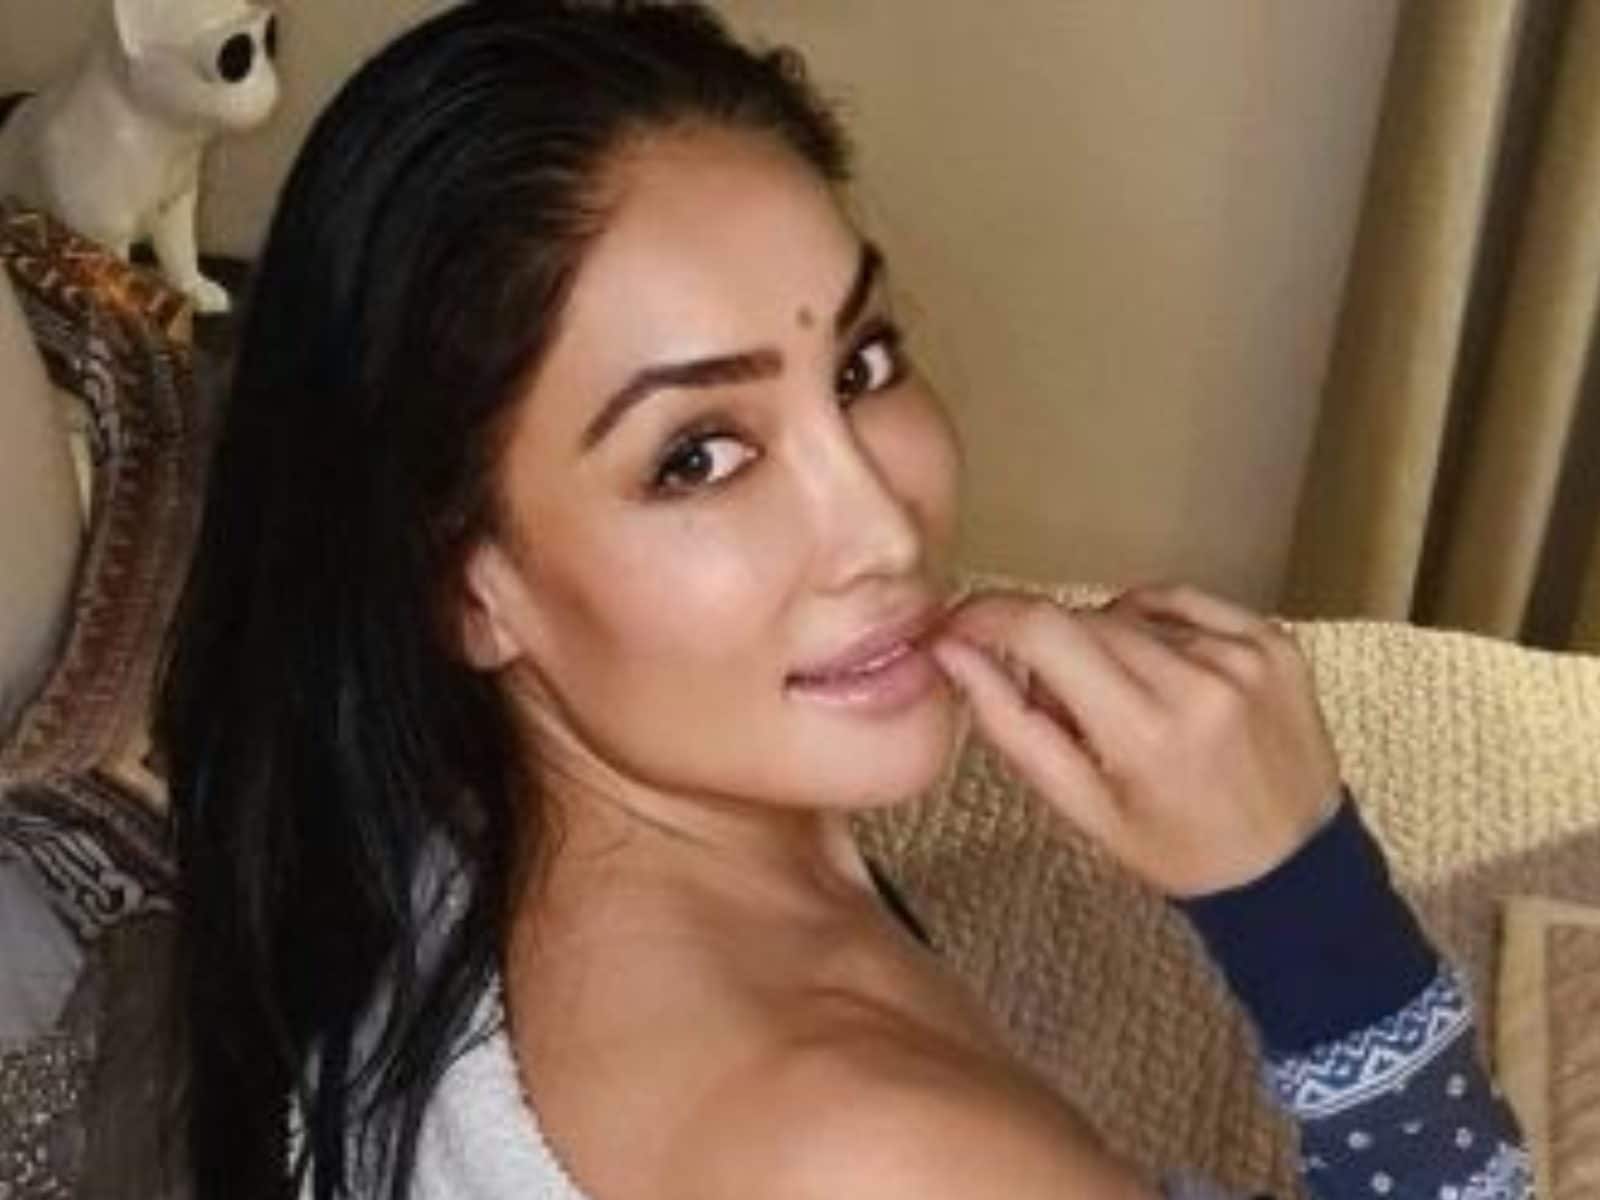 Karishma Kapoor Porn Video - Sofia Hayat Says Many Bollywood Aspirants Tricked into Doing Porn - News18